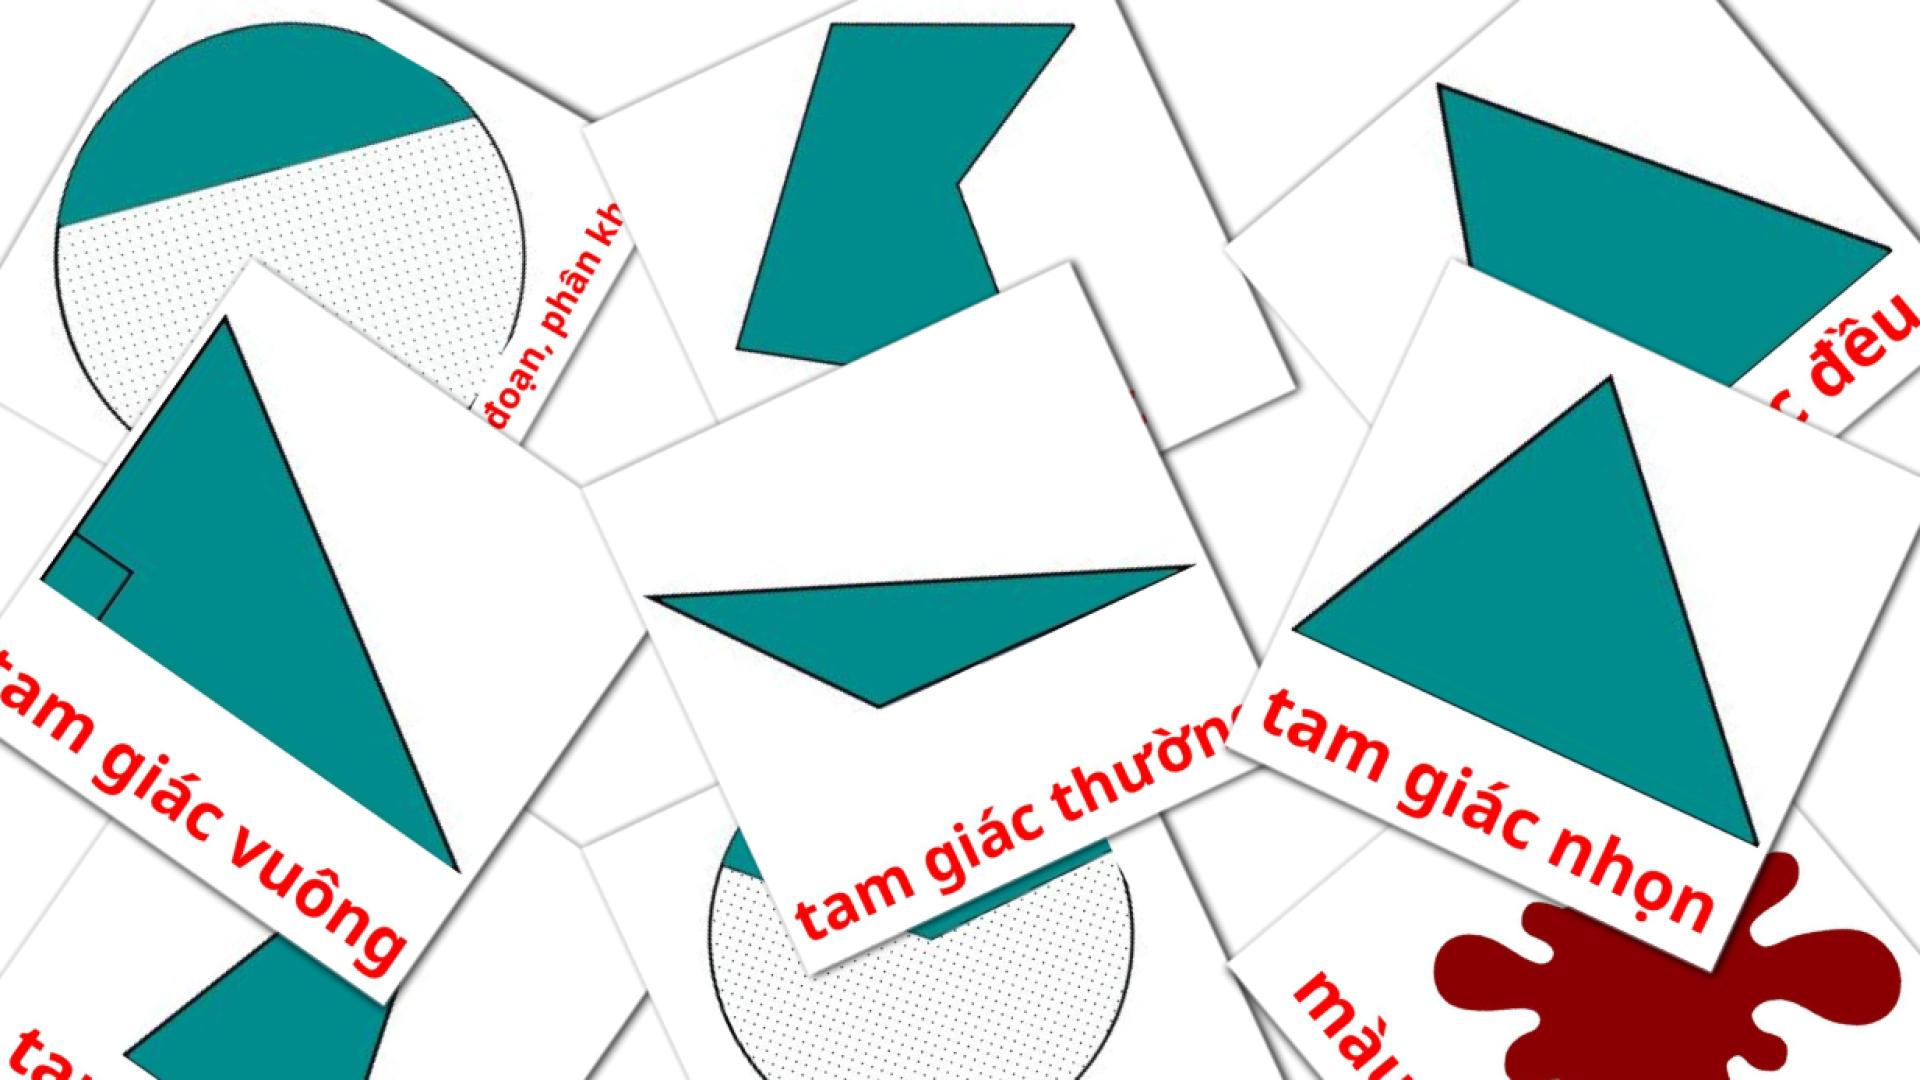 Vietnamesisch Màu sắc và hình khối e Vokabelkarteikarten